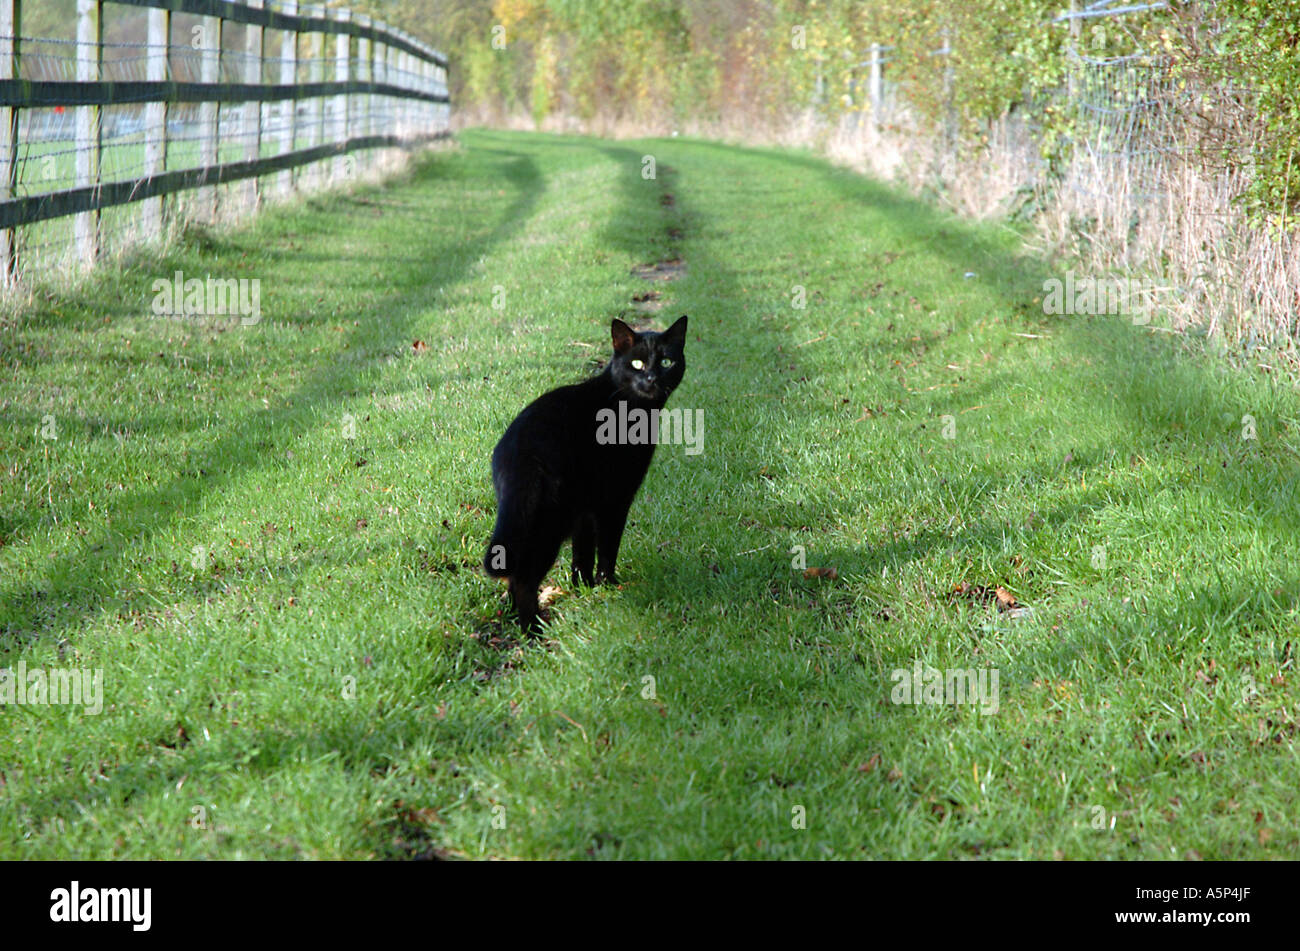 Aumentar Sofocar Donación Un gato negro está huyendo, pero se detuvo en sus pistas por su inmensa  curiosidad Fotografía de stock - Alamy